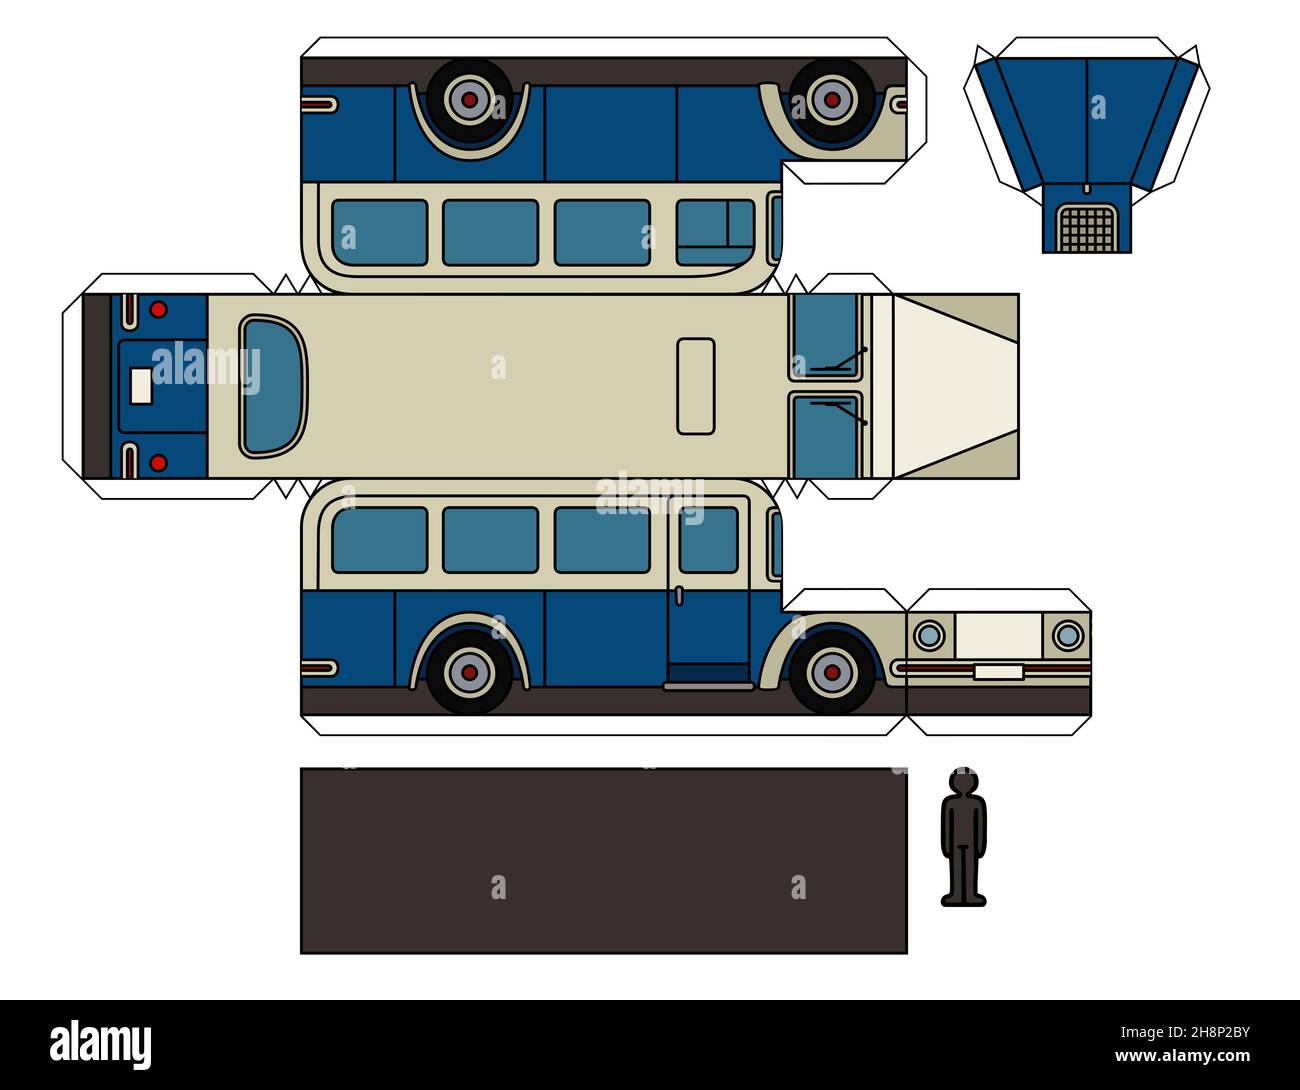 Modello di carta di un autobus d'epoca blu e crema Foto Stock